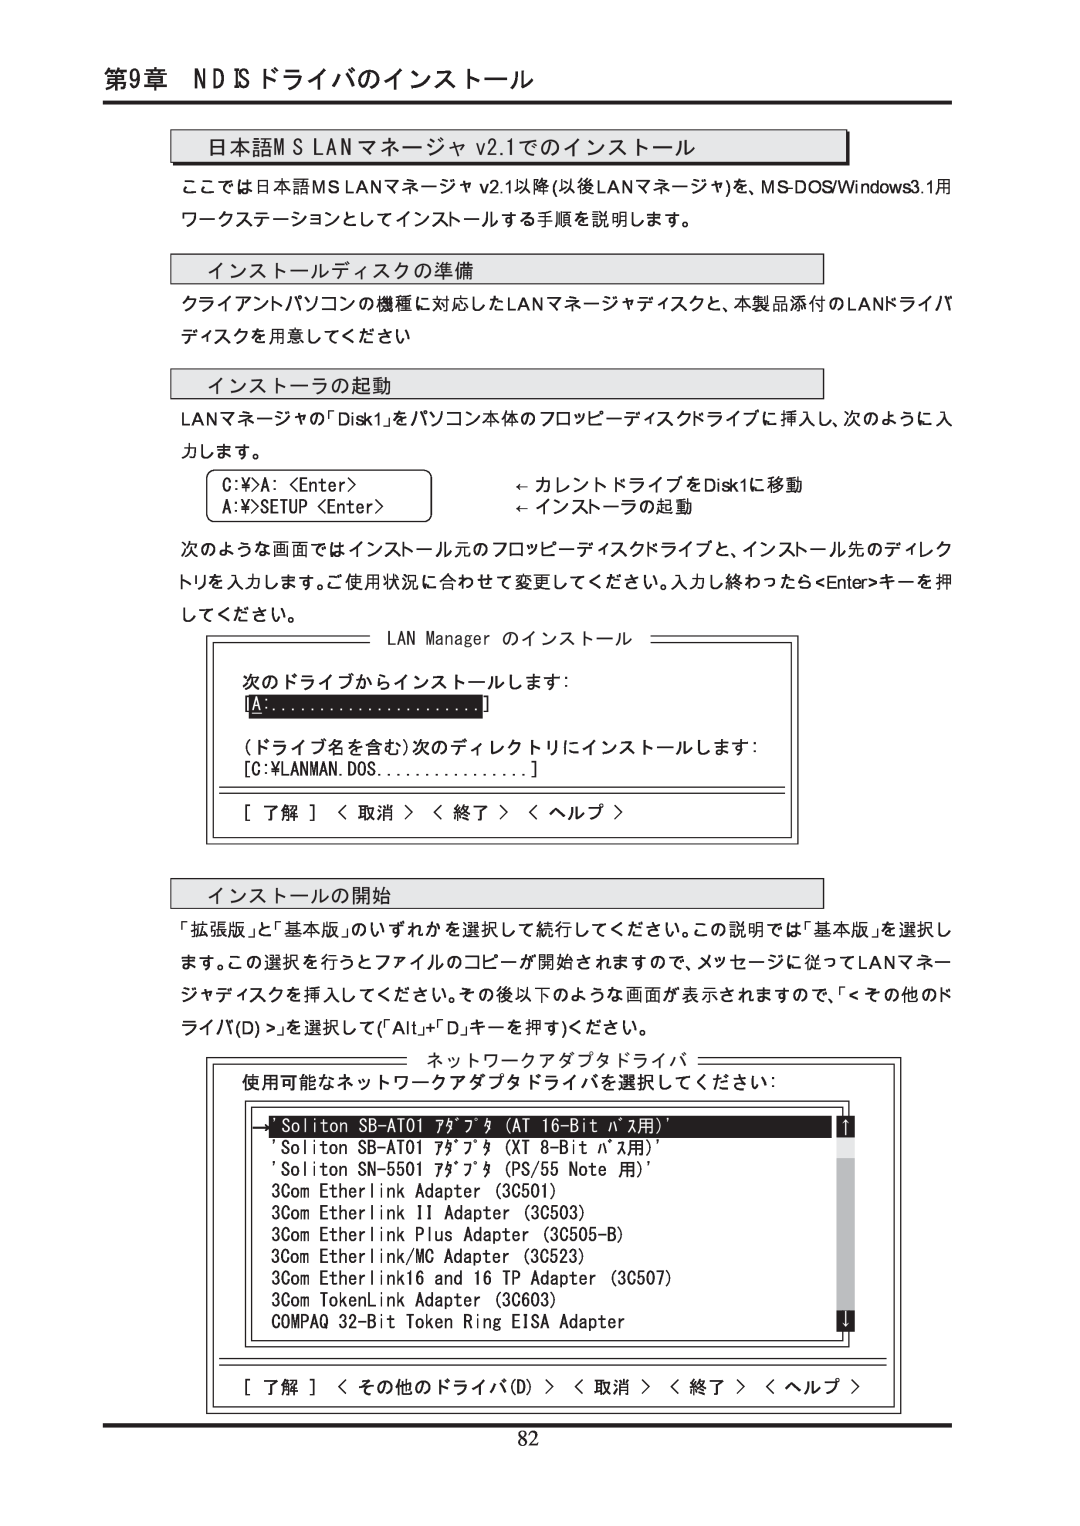 Ratoc Systems REX-R280 manual 日本語MS LANマネージャ v2.1でのインストール, 第9章 NDISドライバのインストール, インストールディスクの準備, インストーラの起動, インストールの開始 